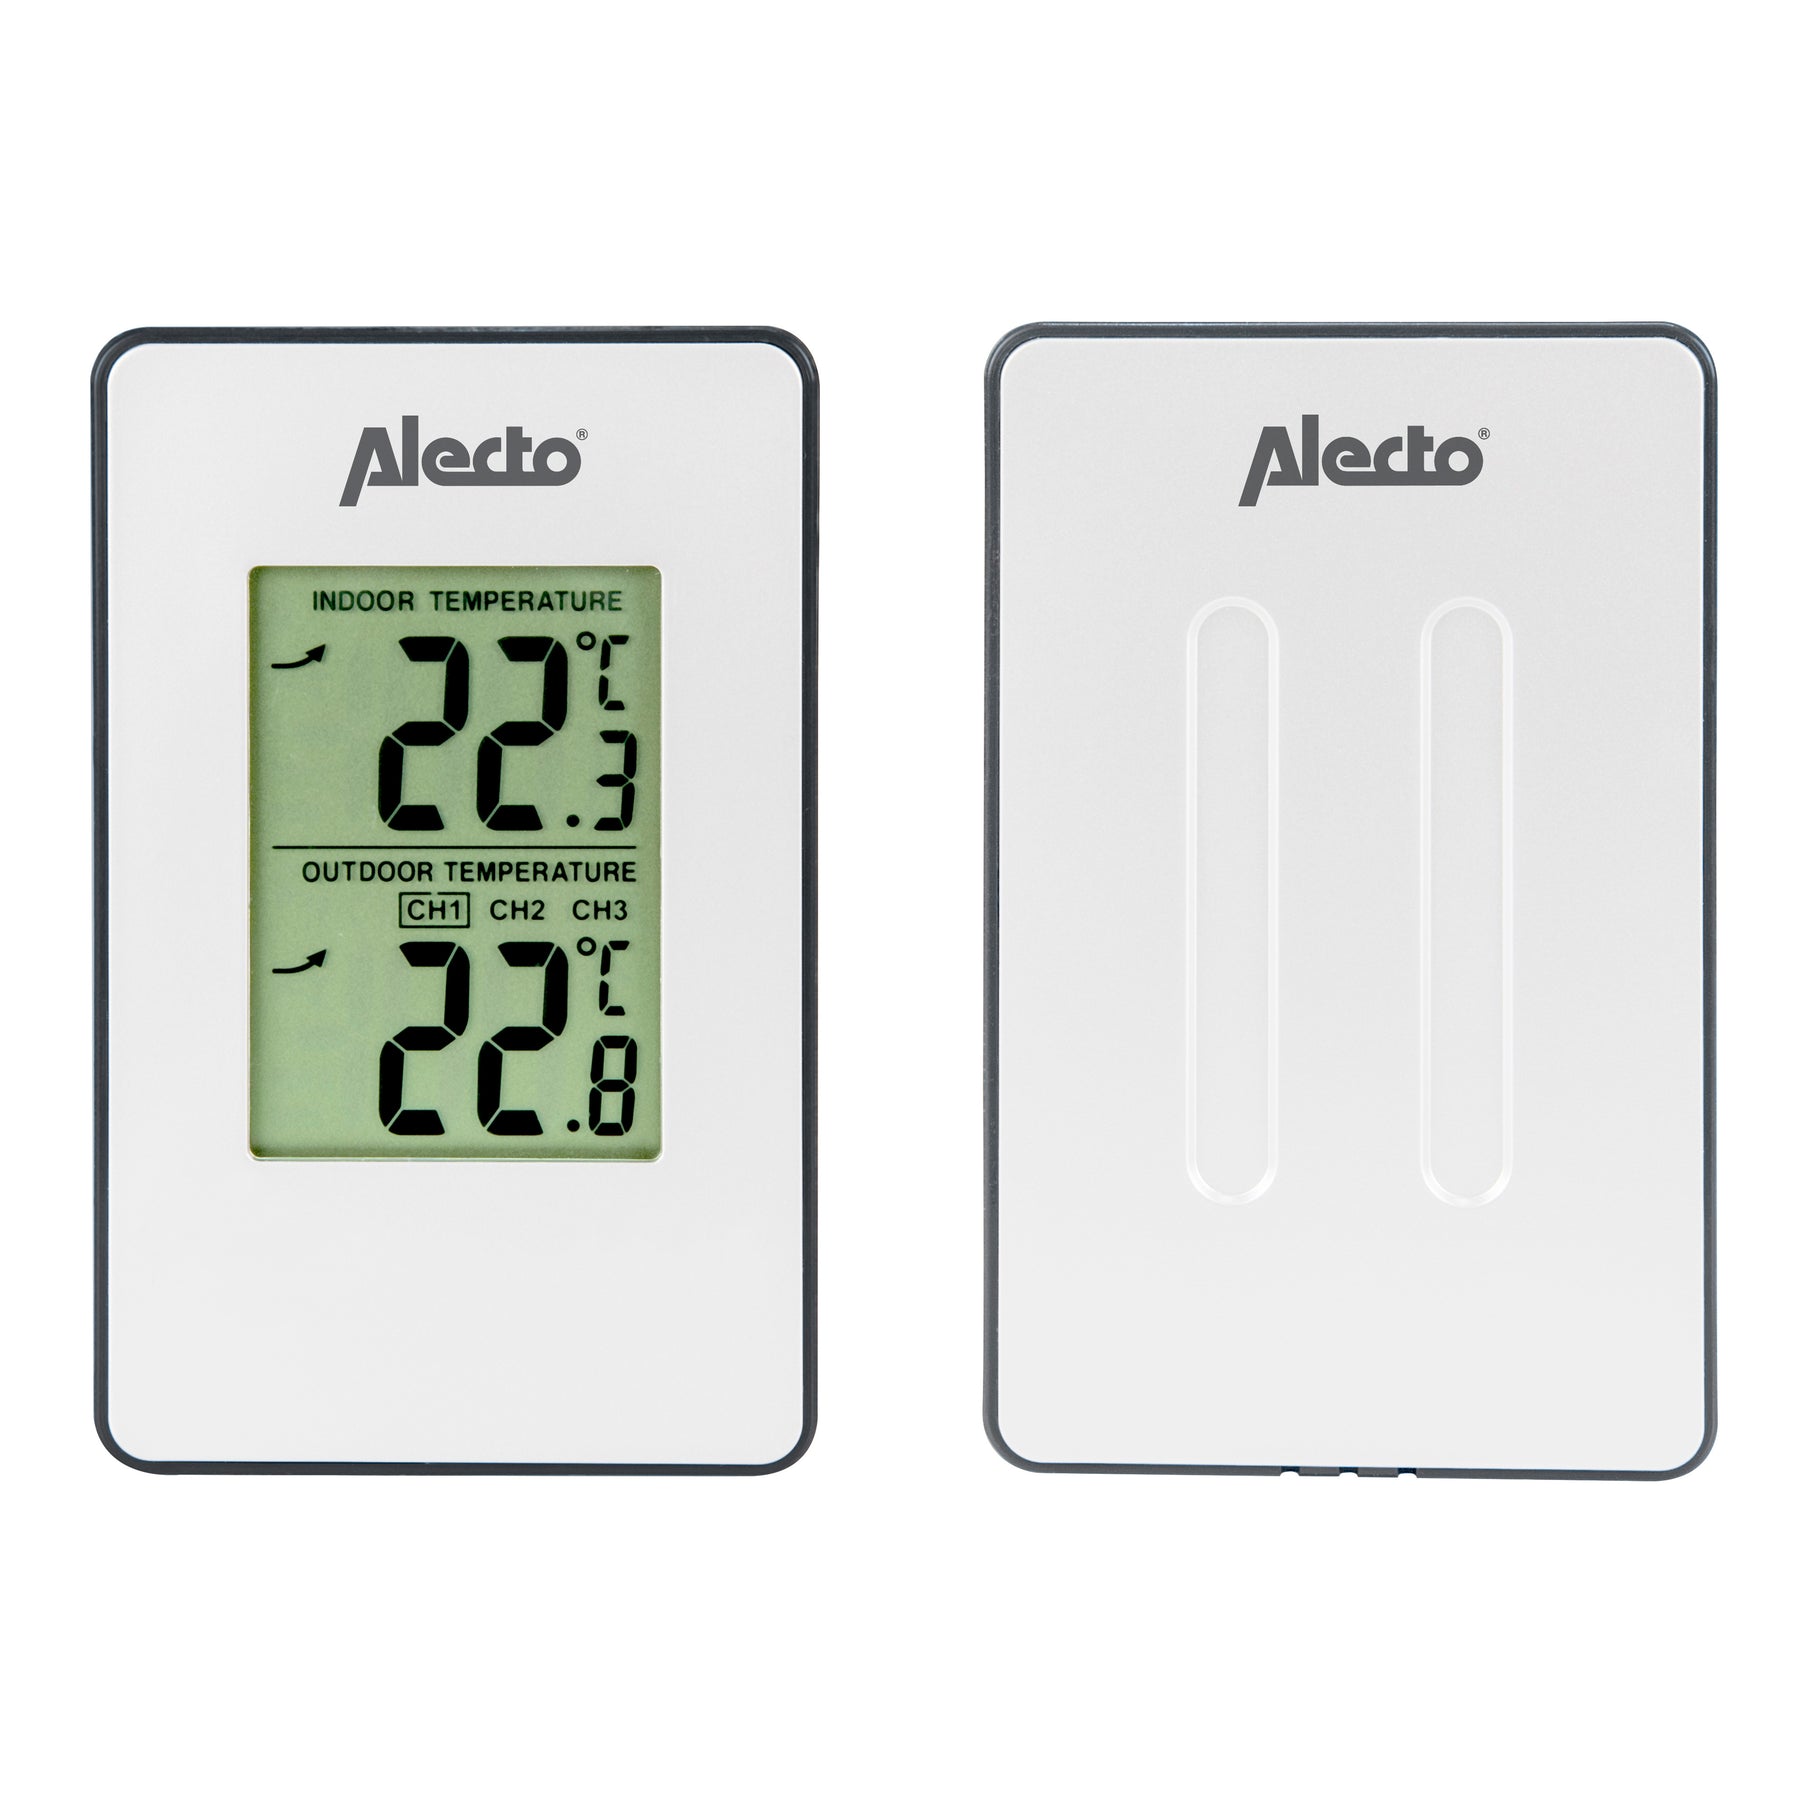 Alecto SMART-TEMP10 kopen?  Nu in de Officiële Alecto Shop – Alecto Home